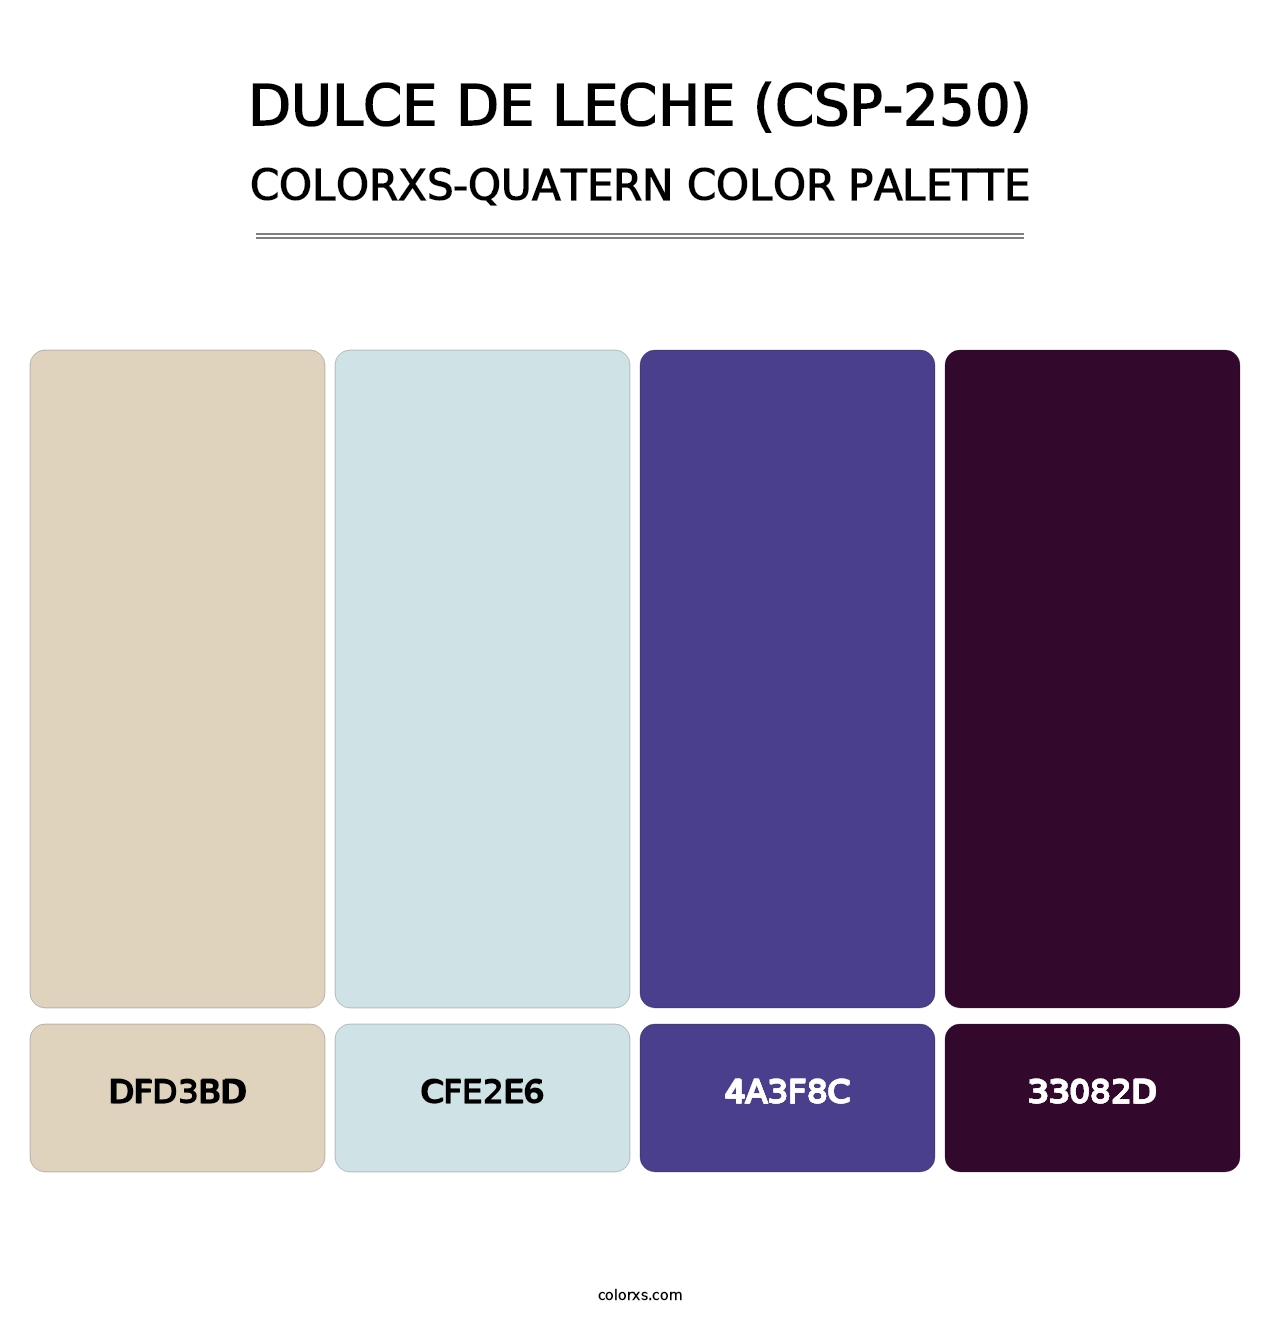 Dulce de Leche (CSP-250) - Colorxs Quatern Palette